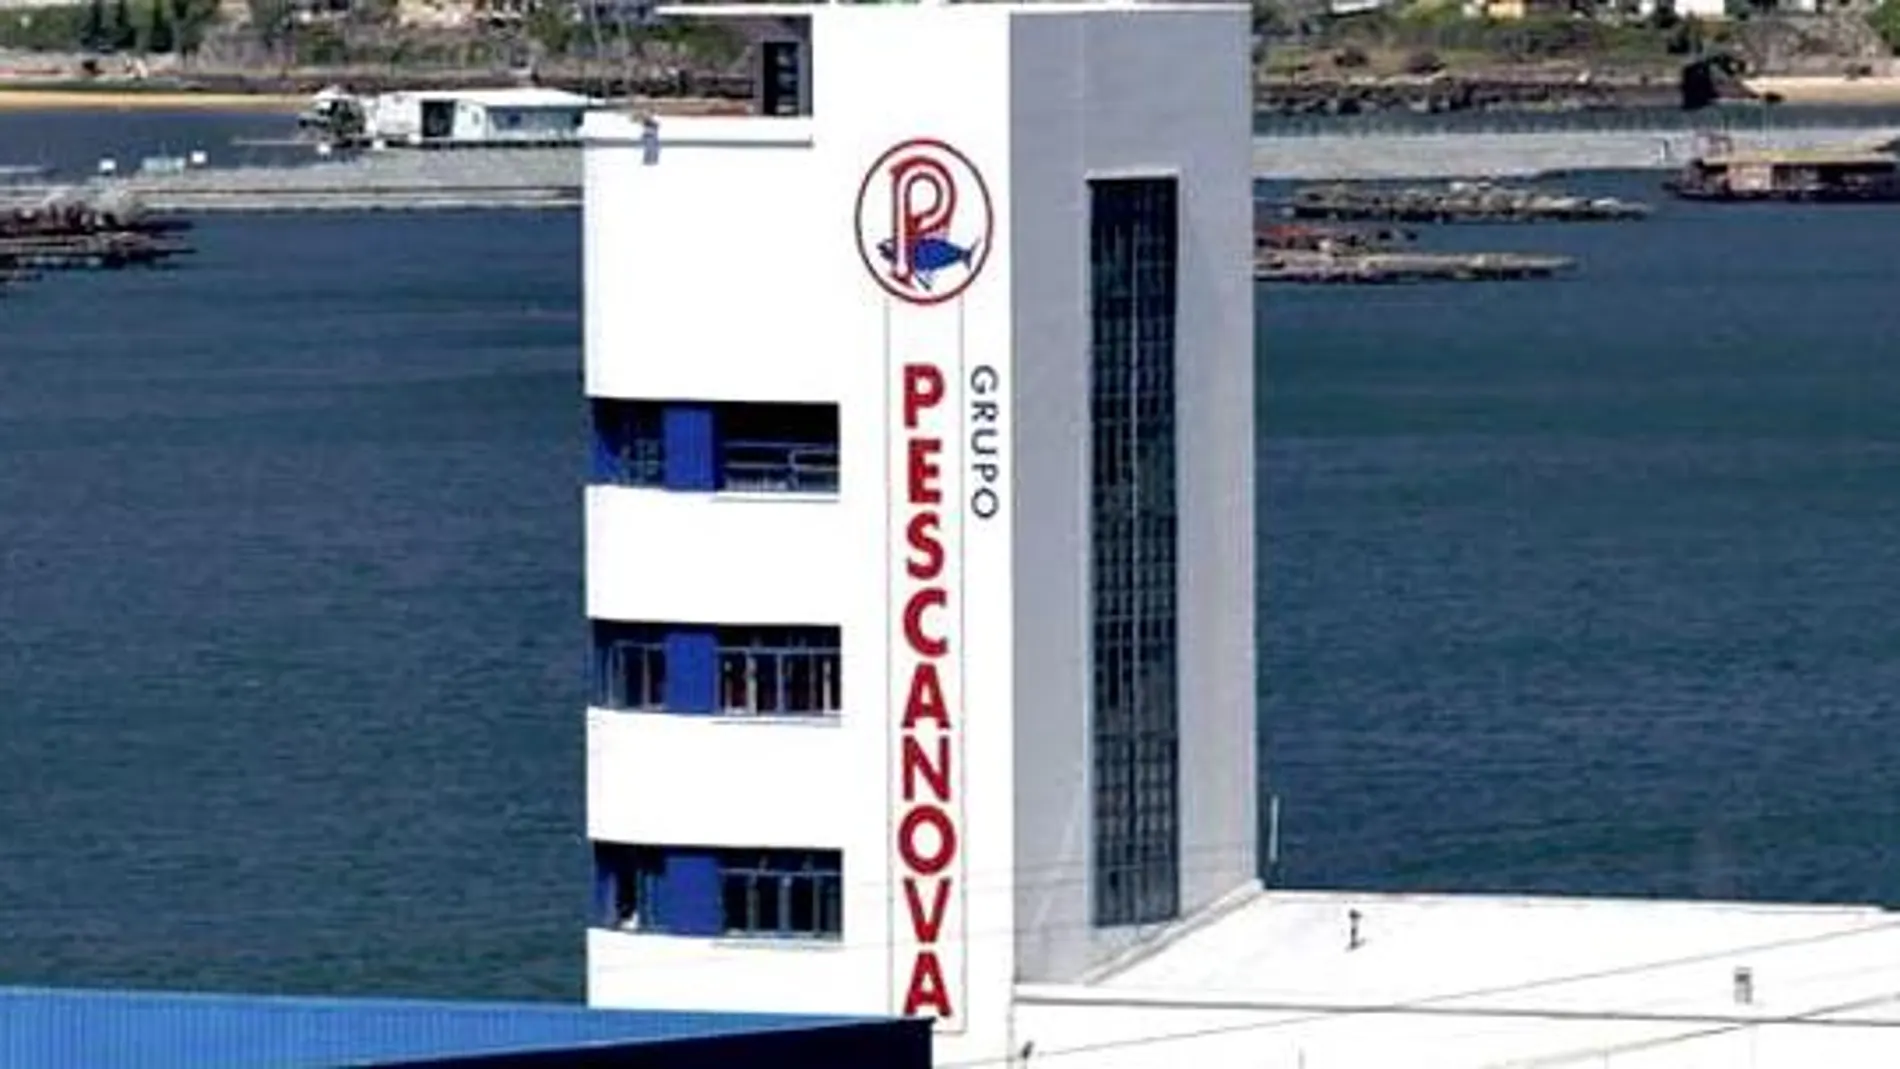 El presidente de Pescanova ha señalado que existe "una obligación moral"de garantizar el futuro de Pescanova.